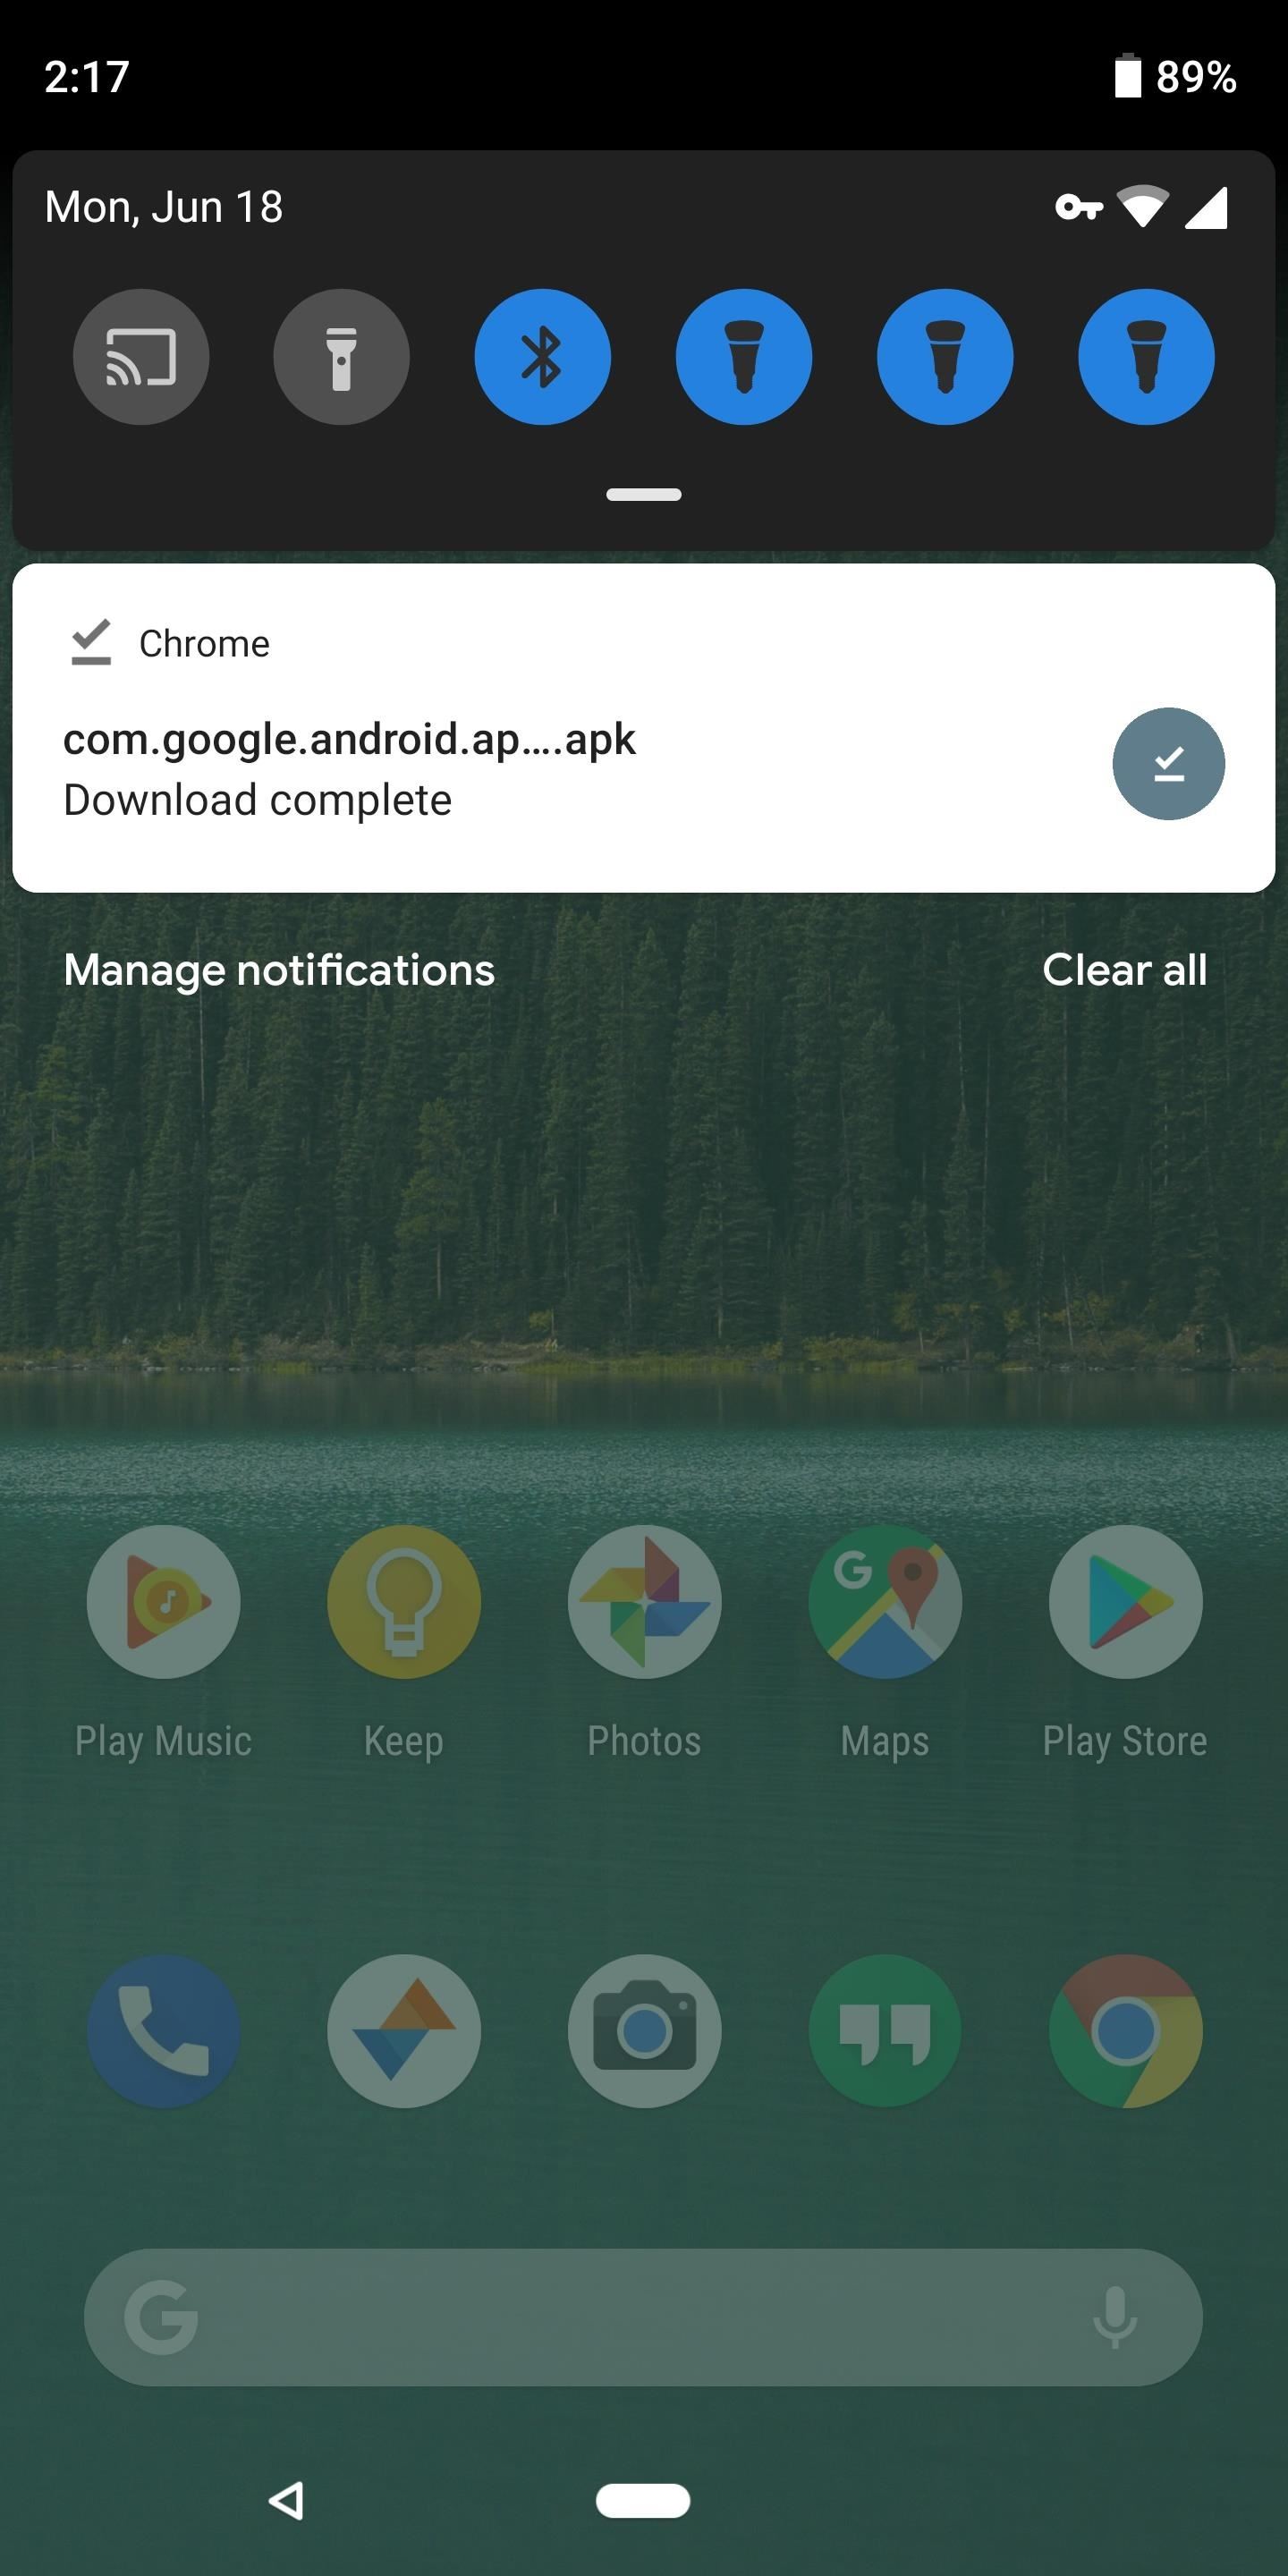 Verzend en ontvang tekst vanaf elke computer met een Android-bericht